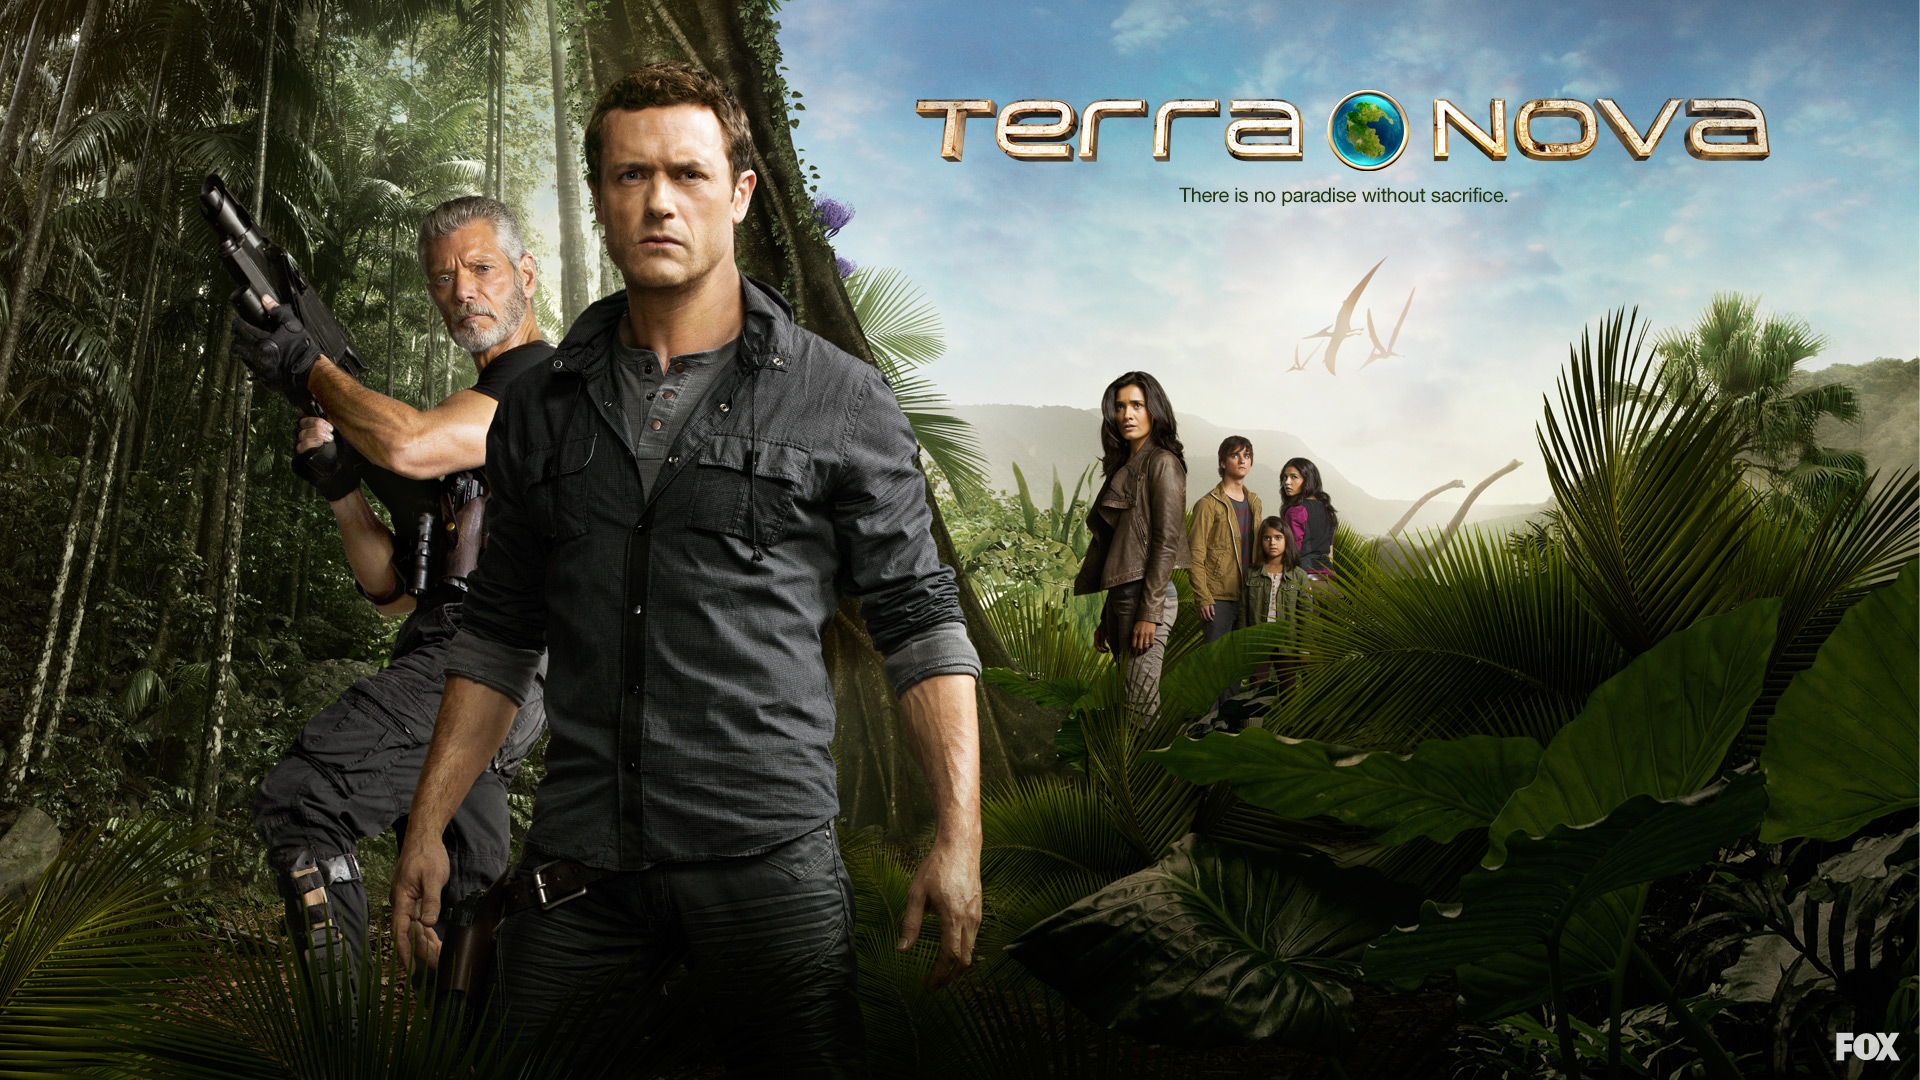 Terra Nova HD download for free